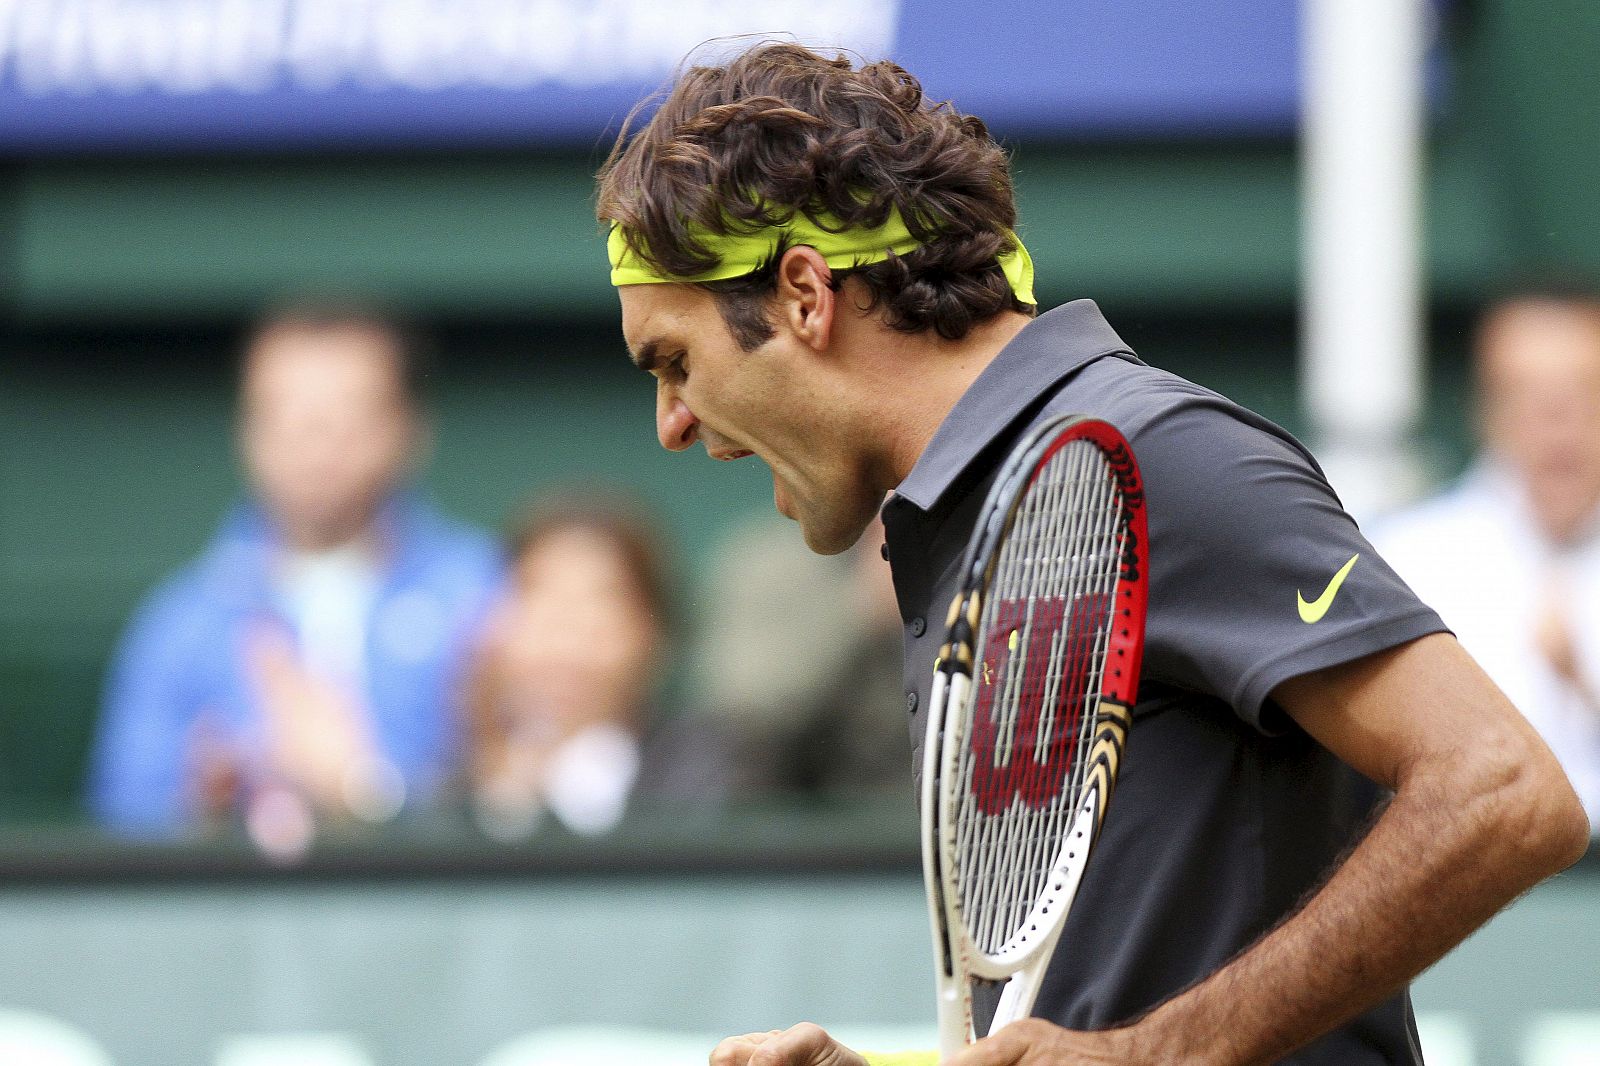 El tenista suizo Roger Federer celebra tras vencer.